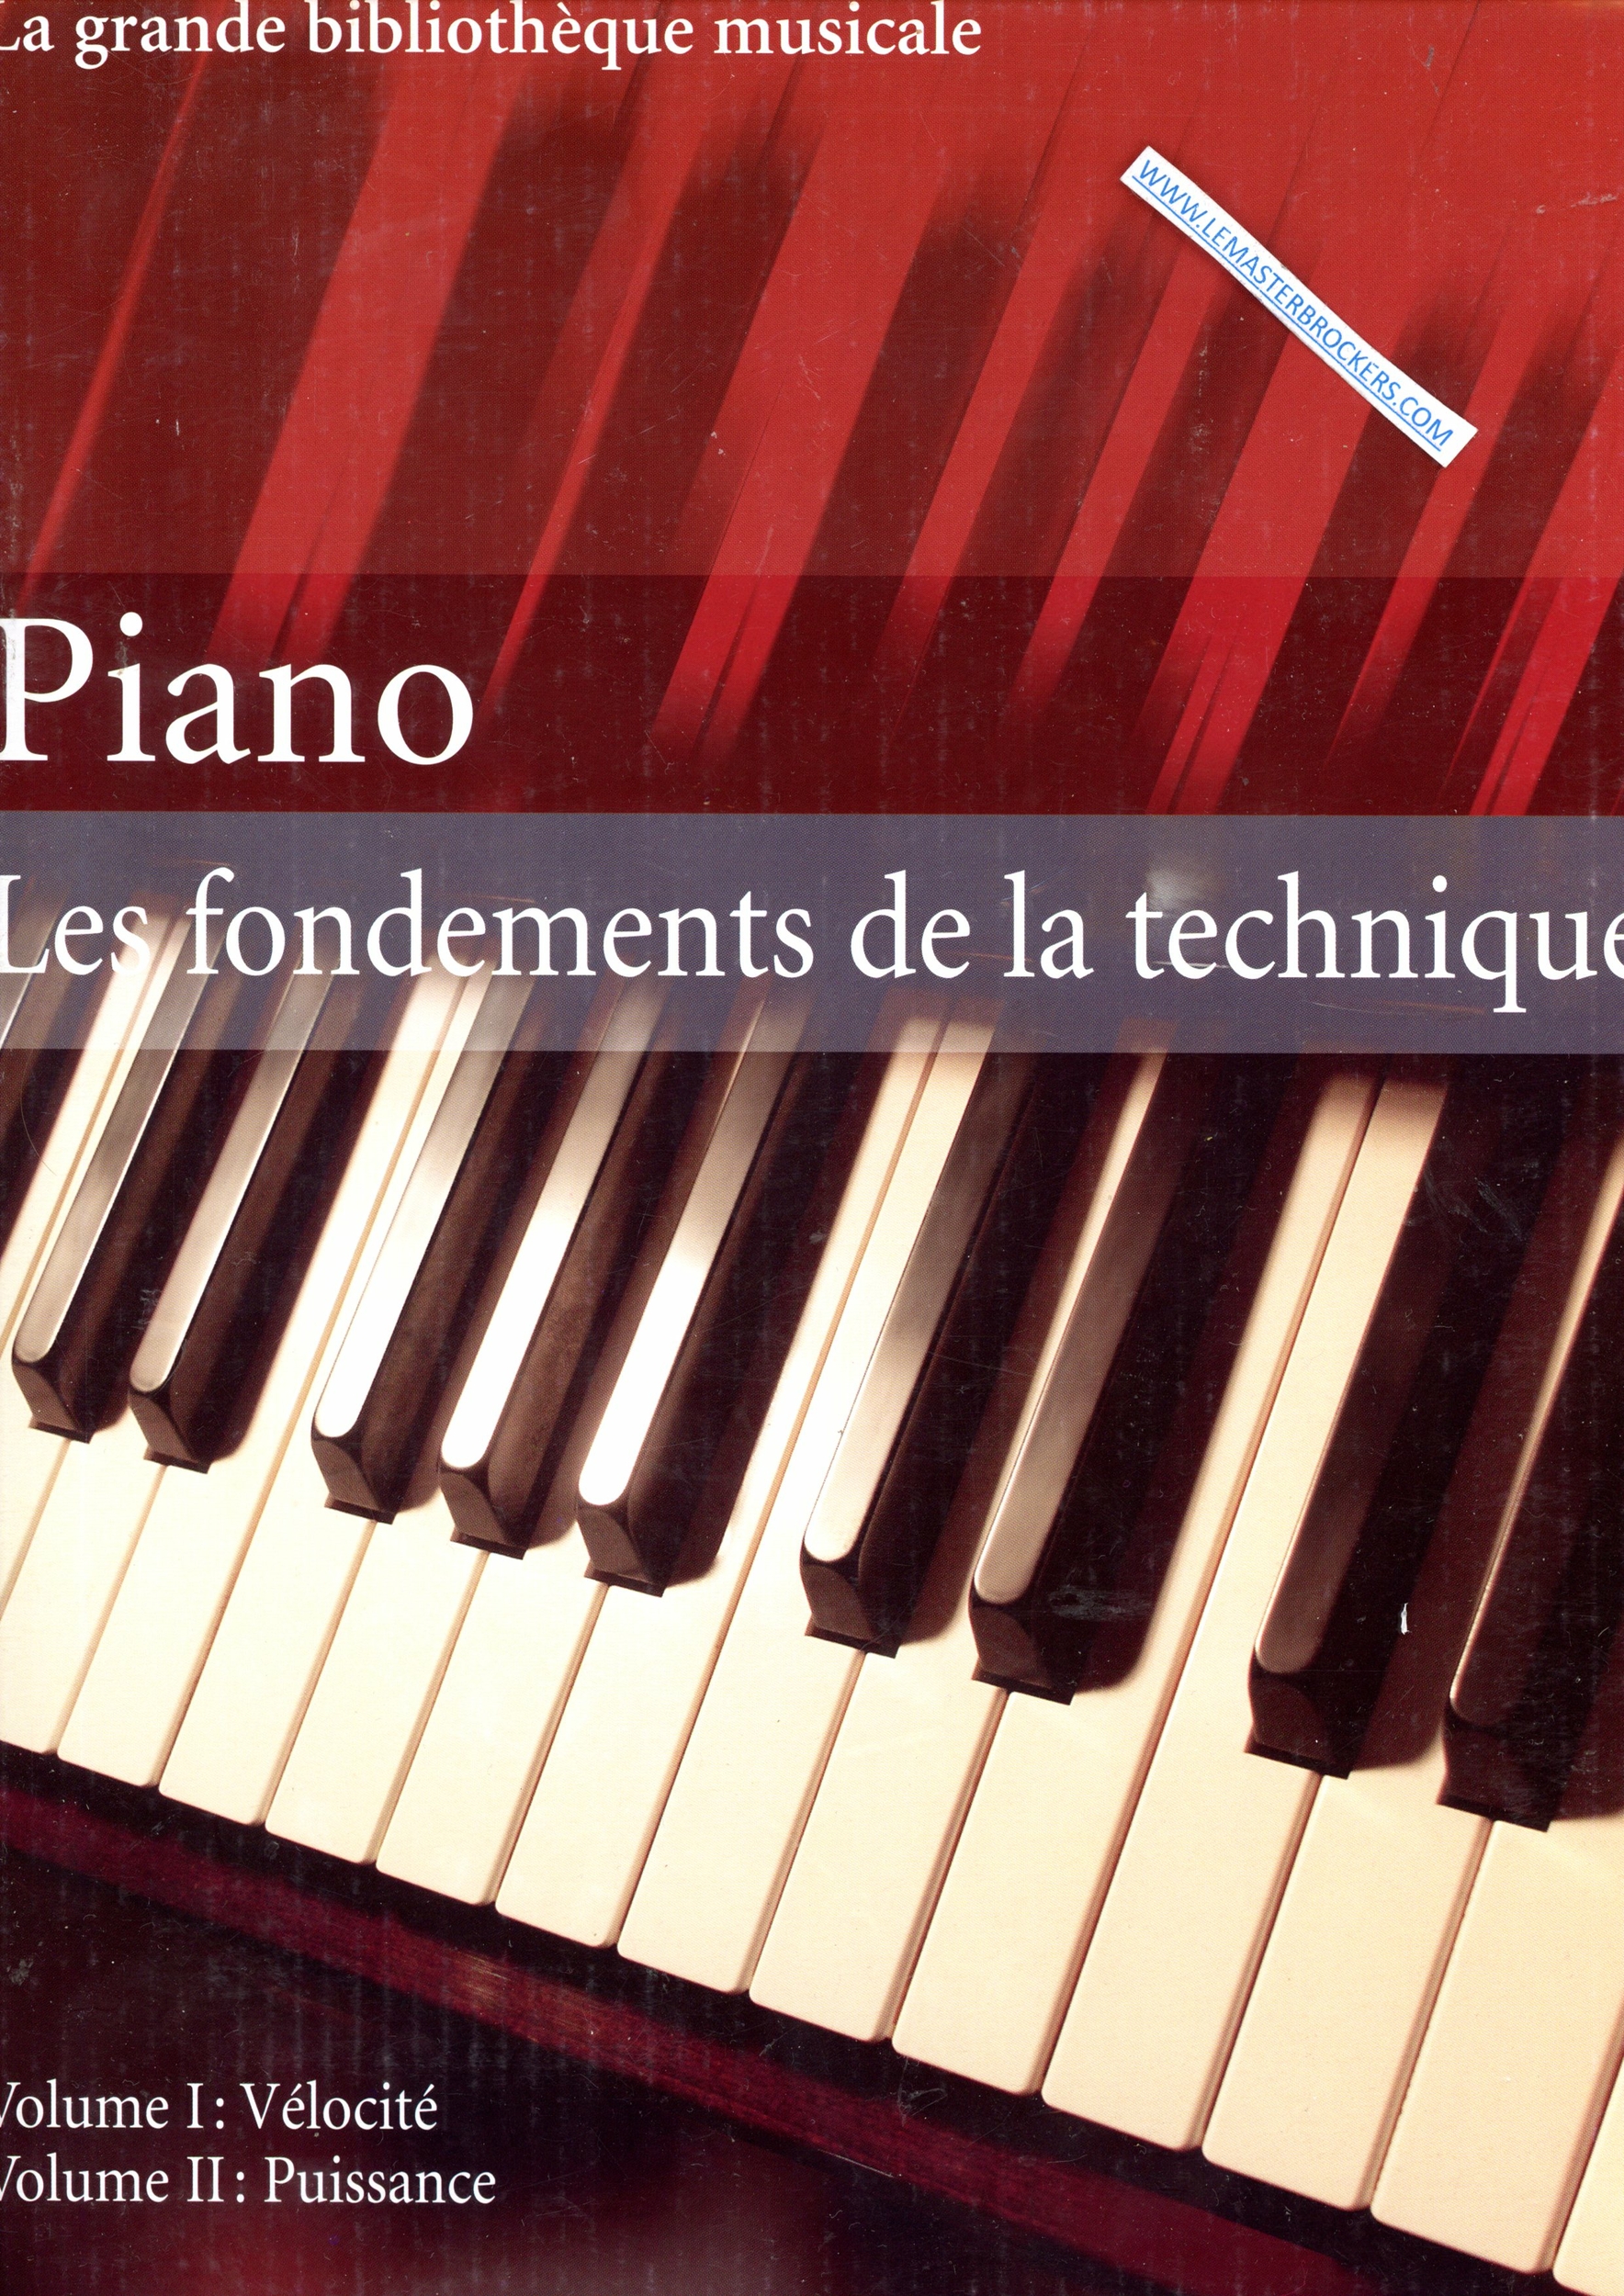 PIANO LES FONDEMENTS DE LA TECHNIQUE 2 VOLUMES PARTITION 4050847003241